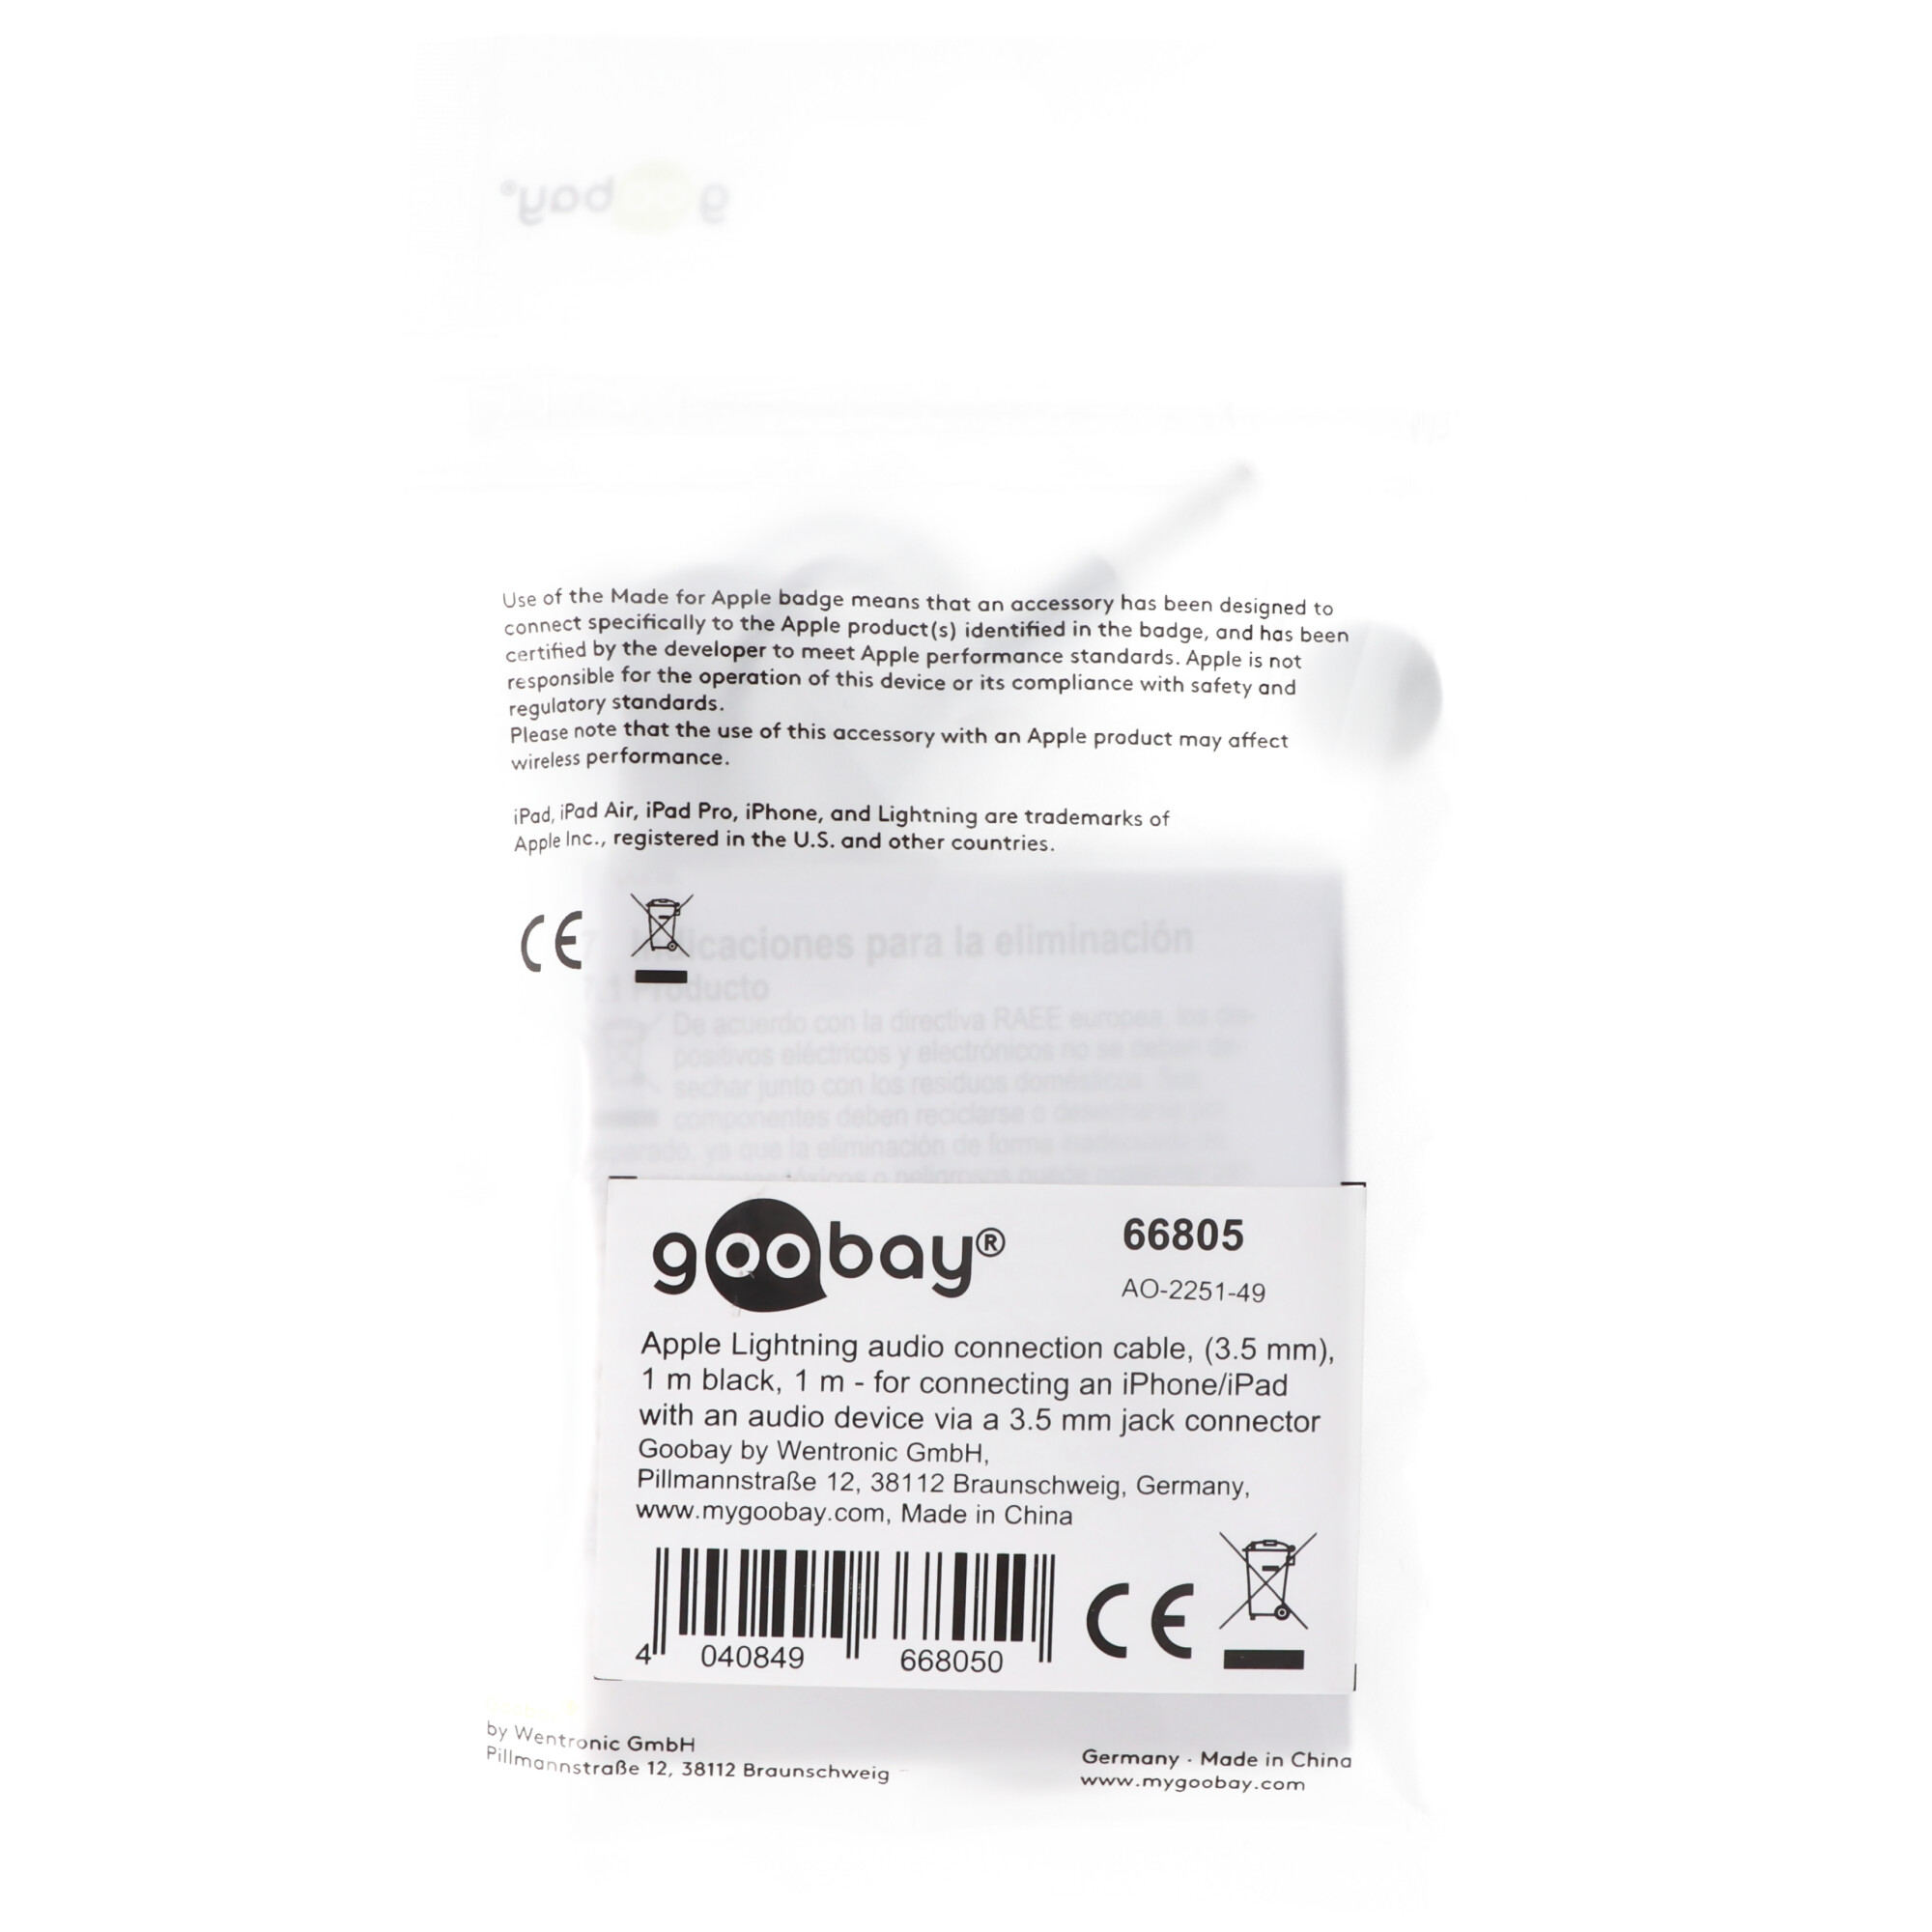 Goobay Apple Lightning Audioanschlusskabel (3,5mm) 1m schwarz - zum Verbinden eines iPhone/iPad mit einem Audiogerät über einen 3,5-mm-Klinkenanschluss